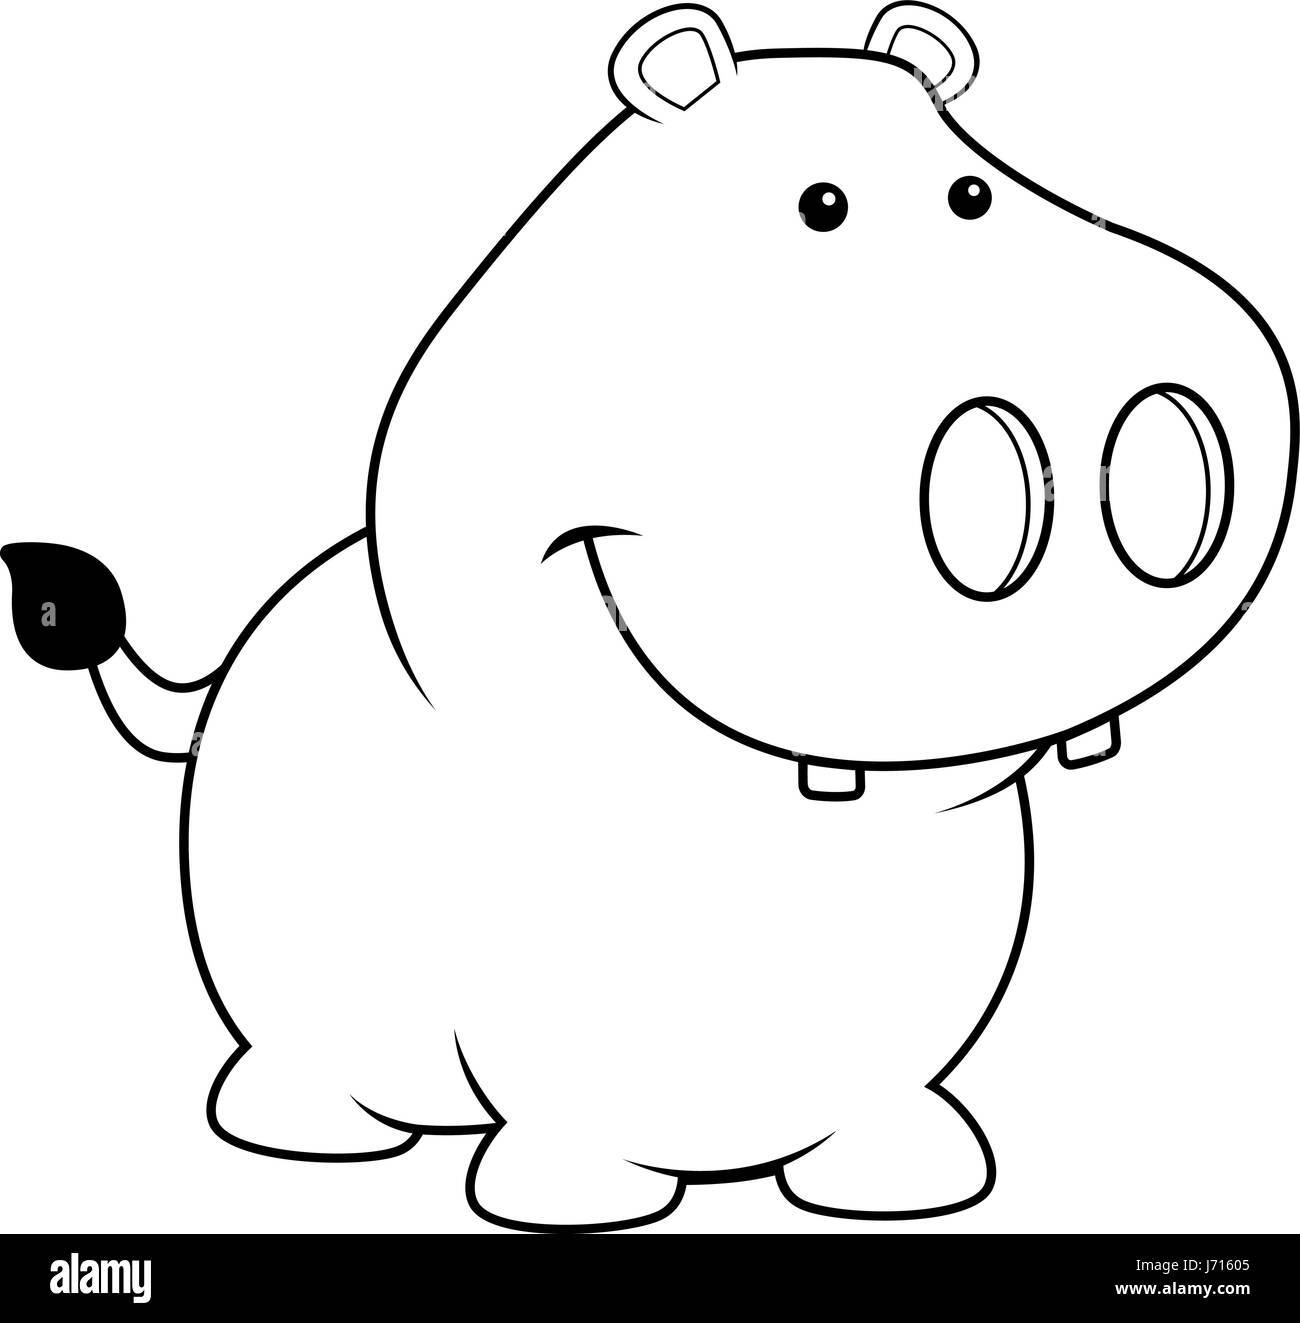 Dibujos animados de hipopótamos Imágenes de stock en blanco y negro -  Página 2 - Alamy